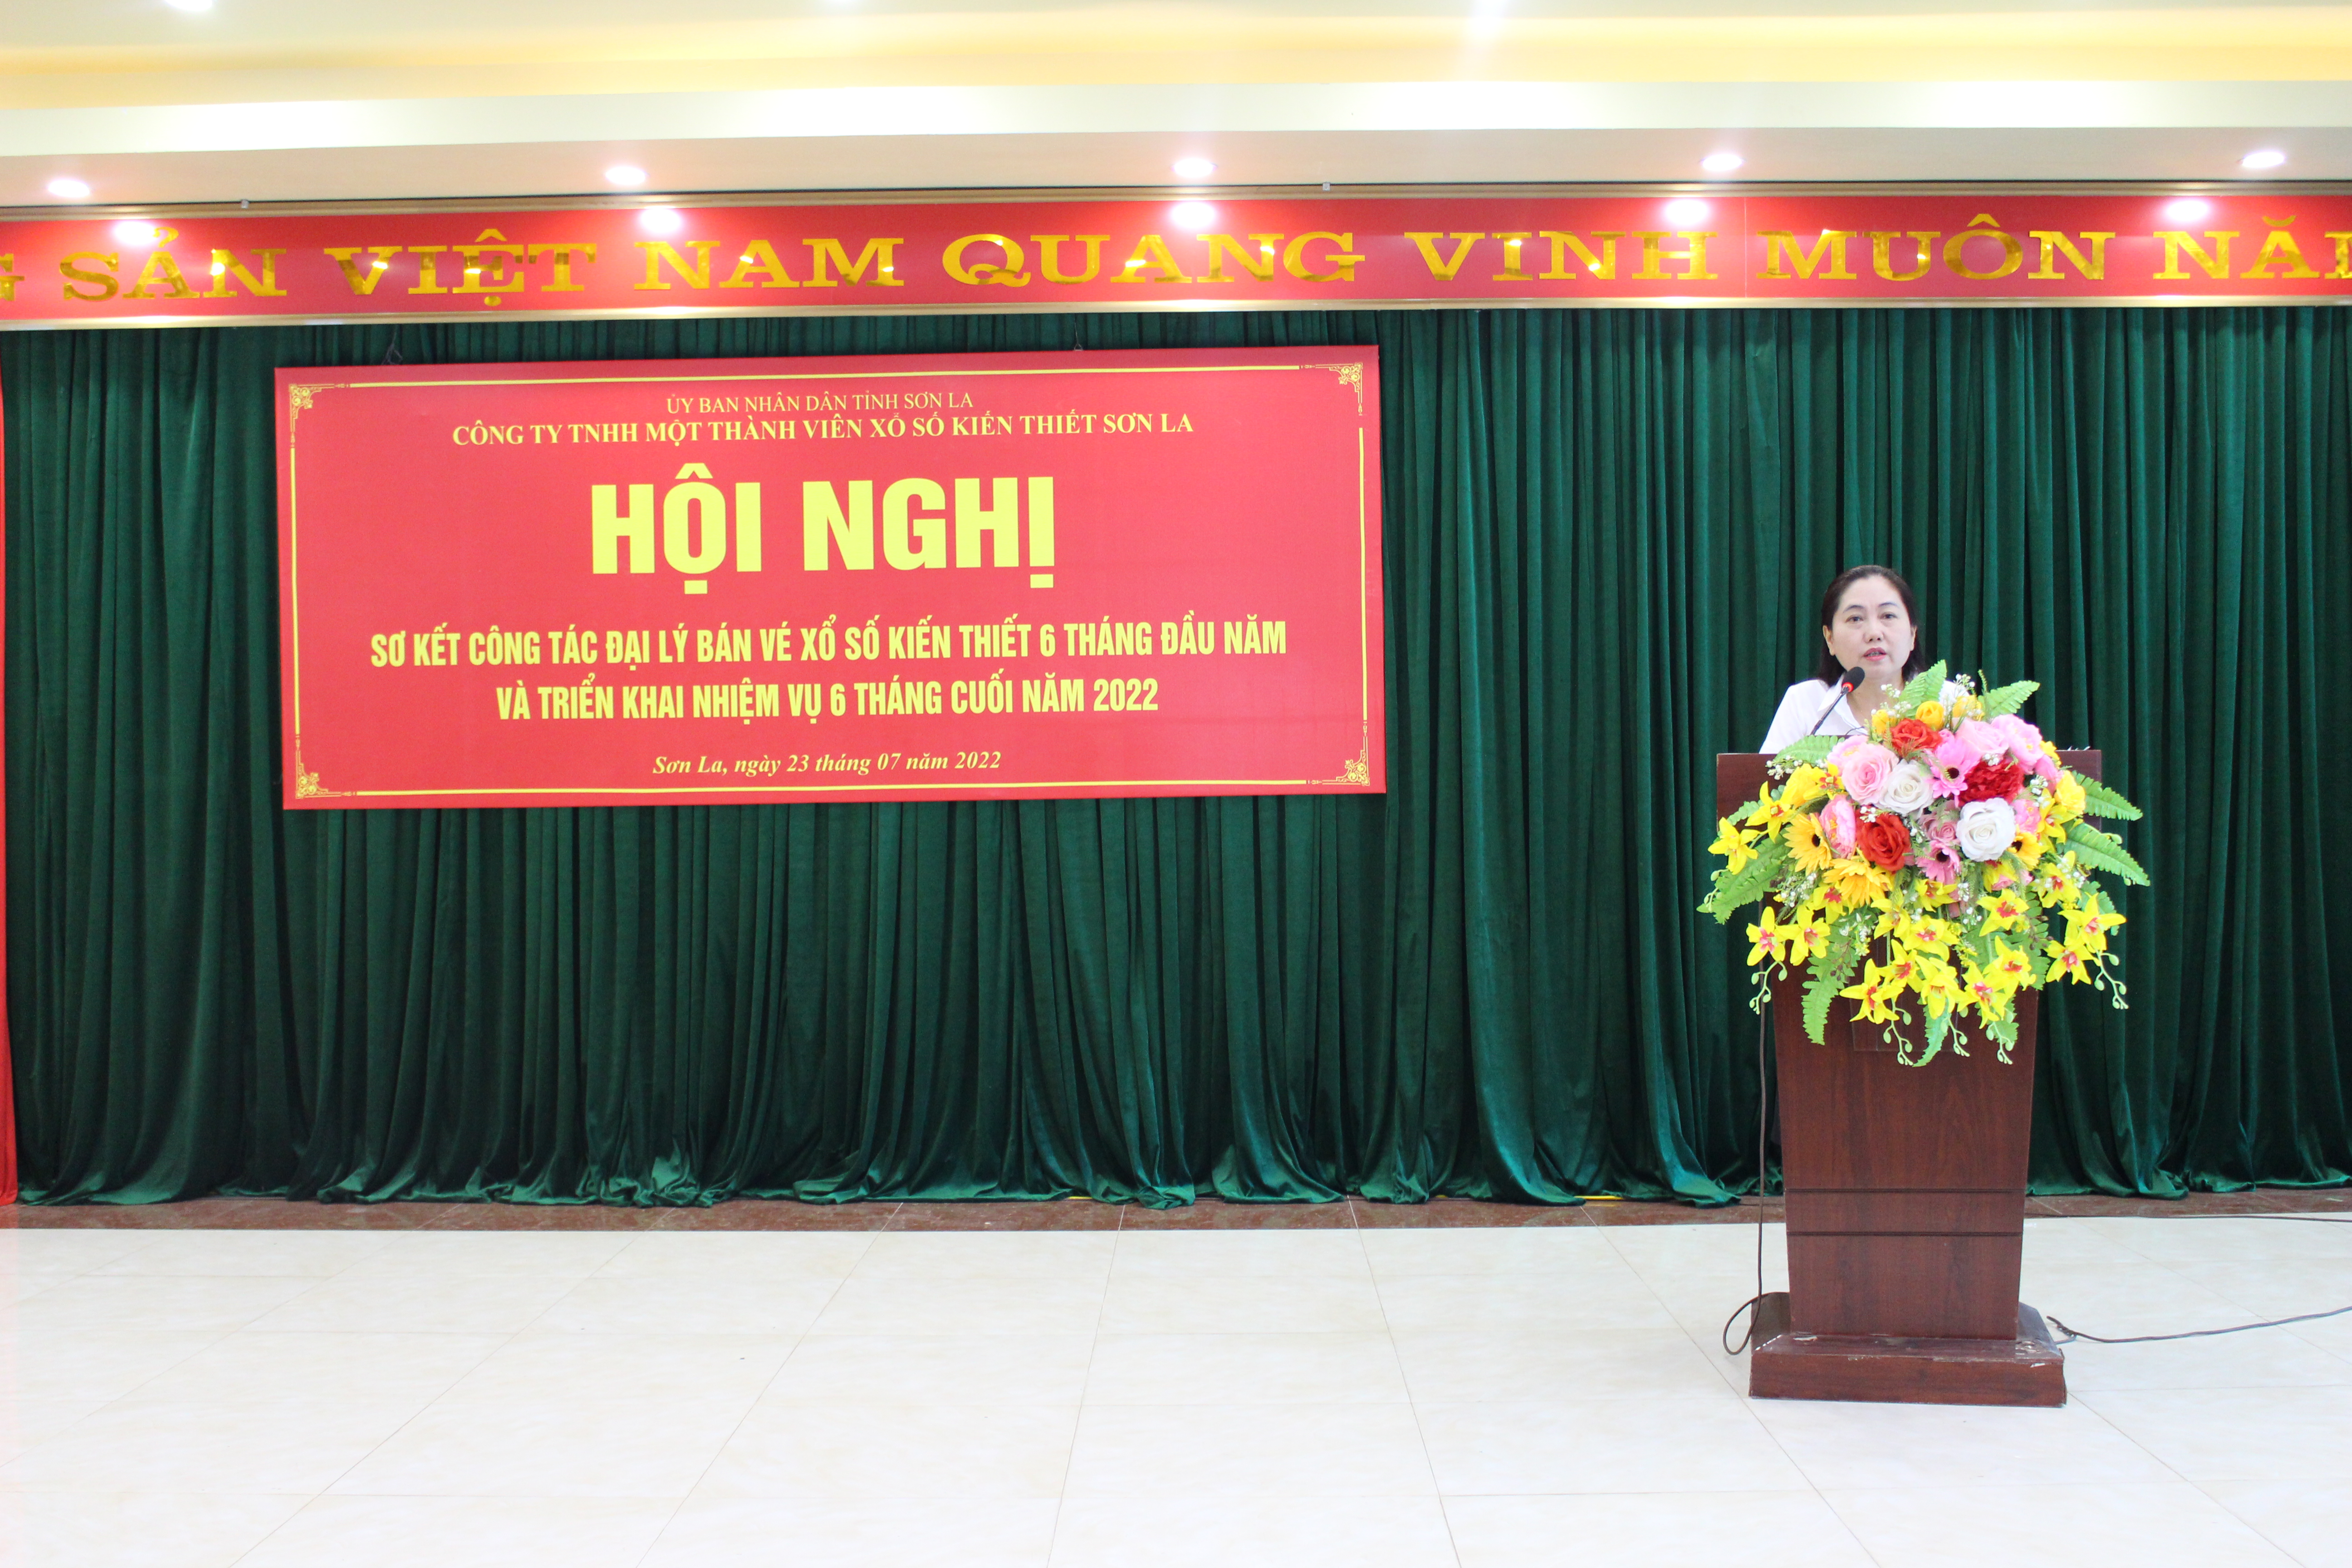 Đ/C : Bùi Thị Thoa Chủ tịch kiêm Giám đốc Công ty phát biểu và chỉ đạo hội nghị